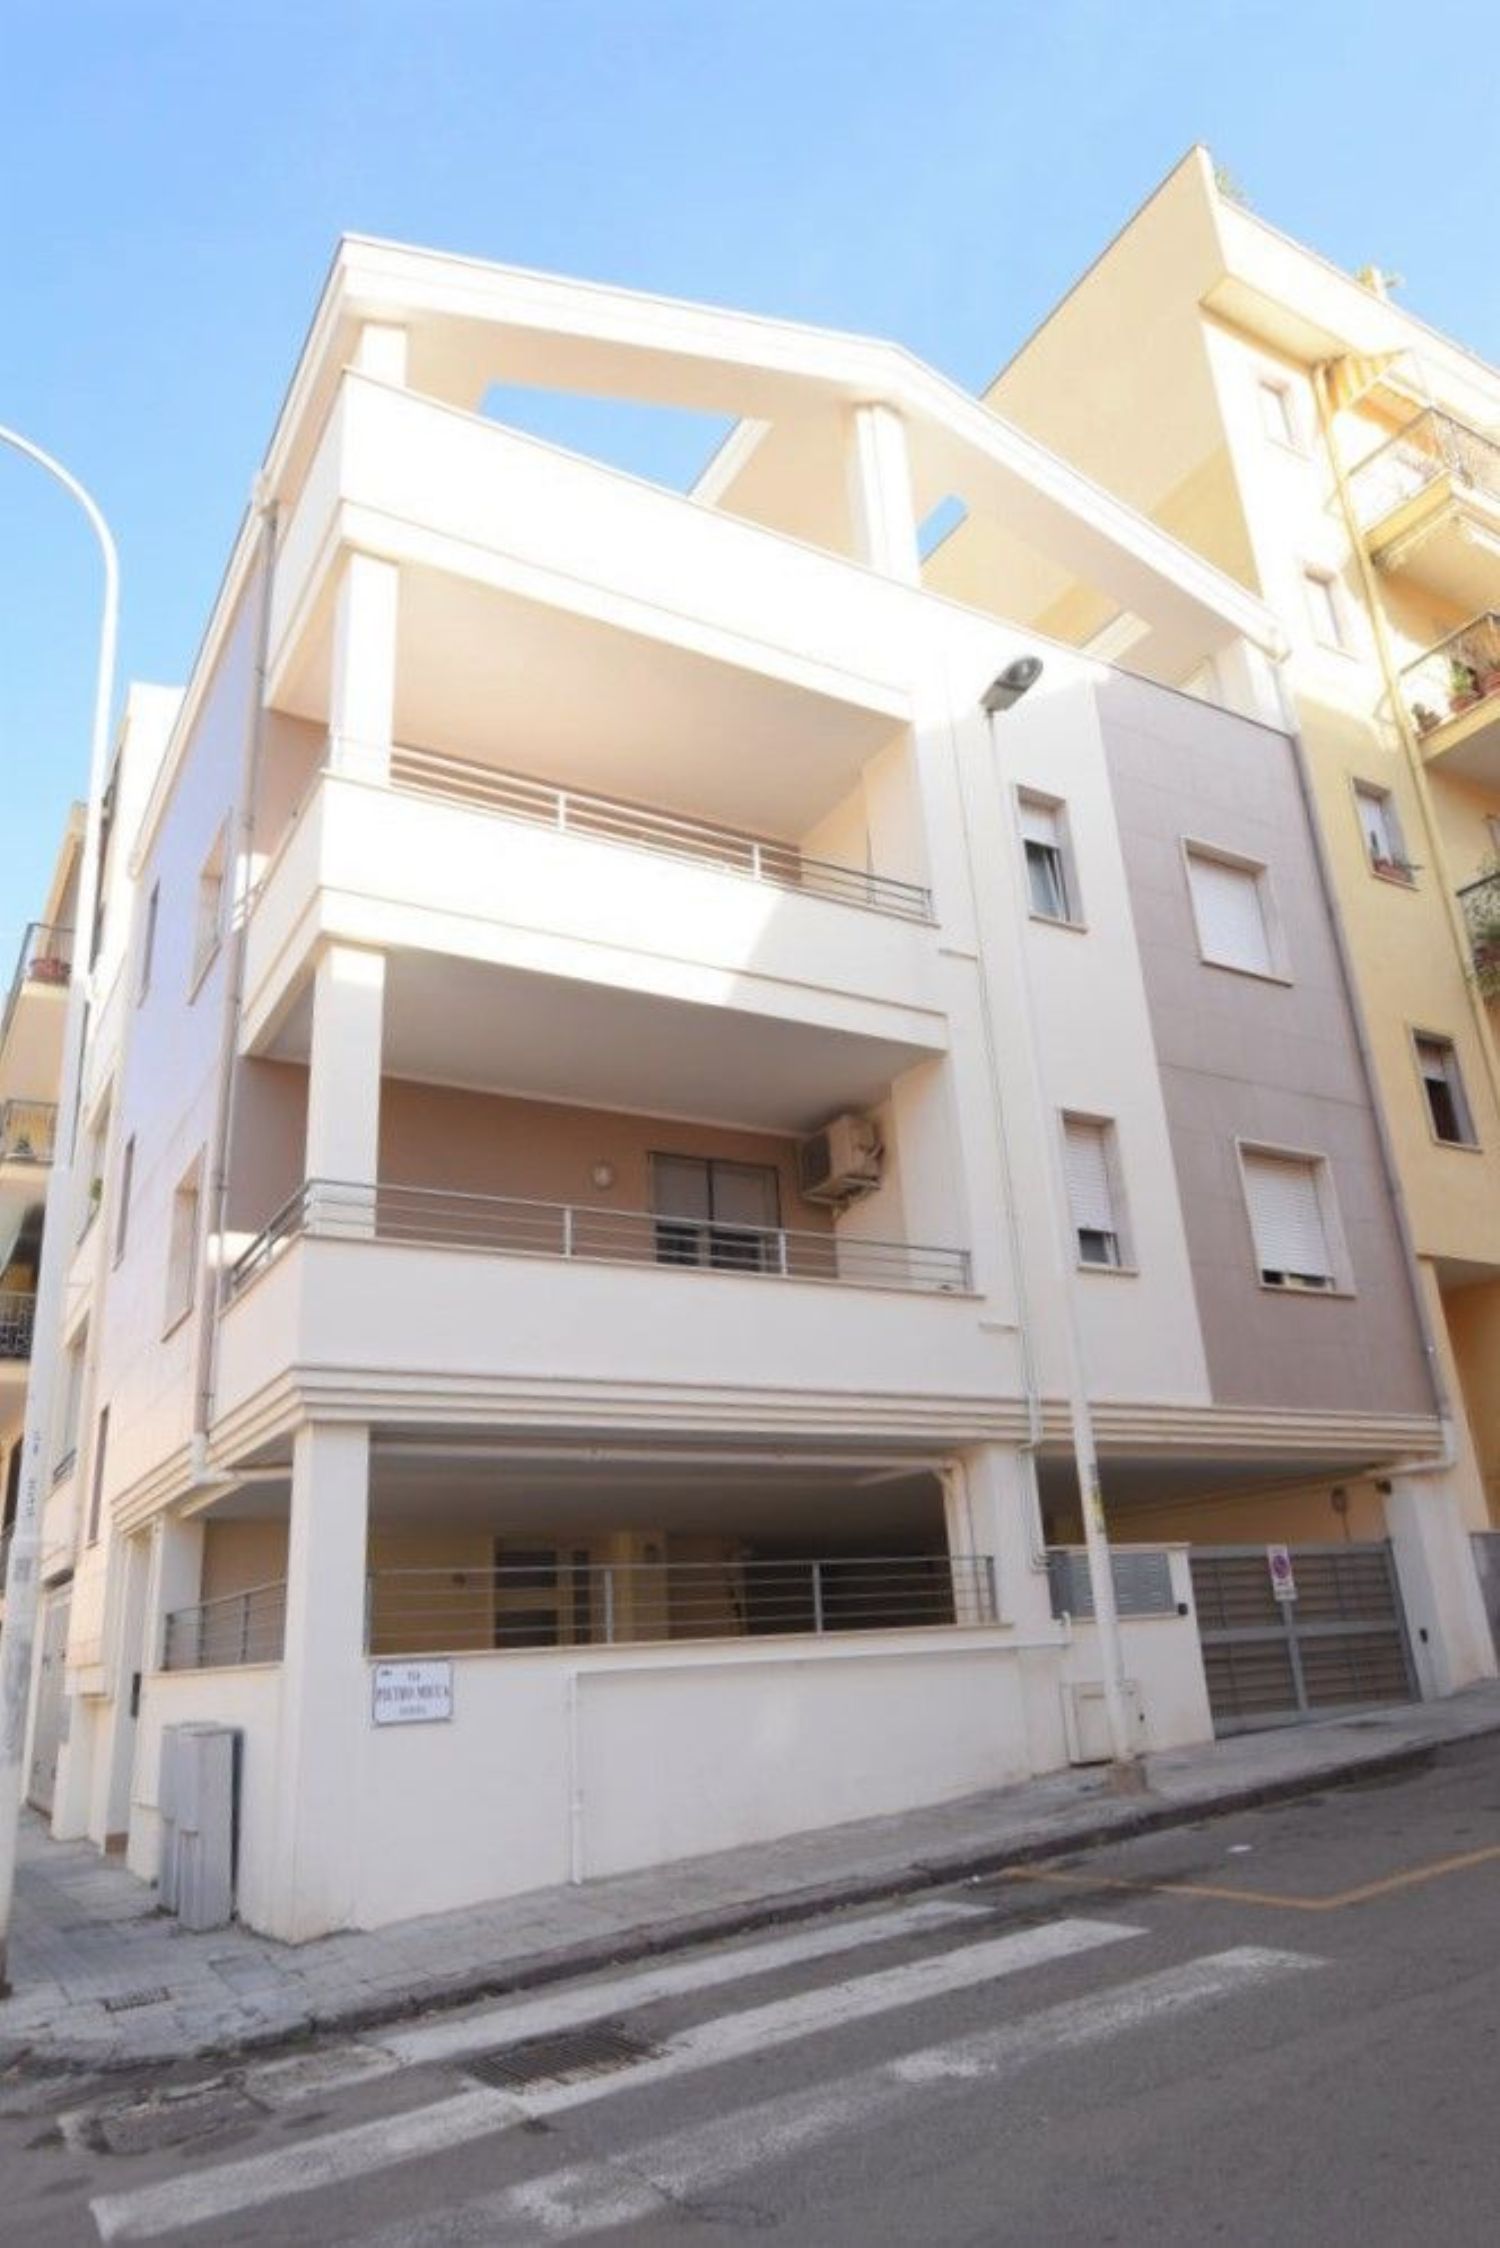 Appartamento in vendita a Sassari, 2 locali, prezzo € 78.000 | PortaleAgenzieImmobiliari.it